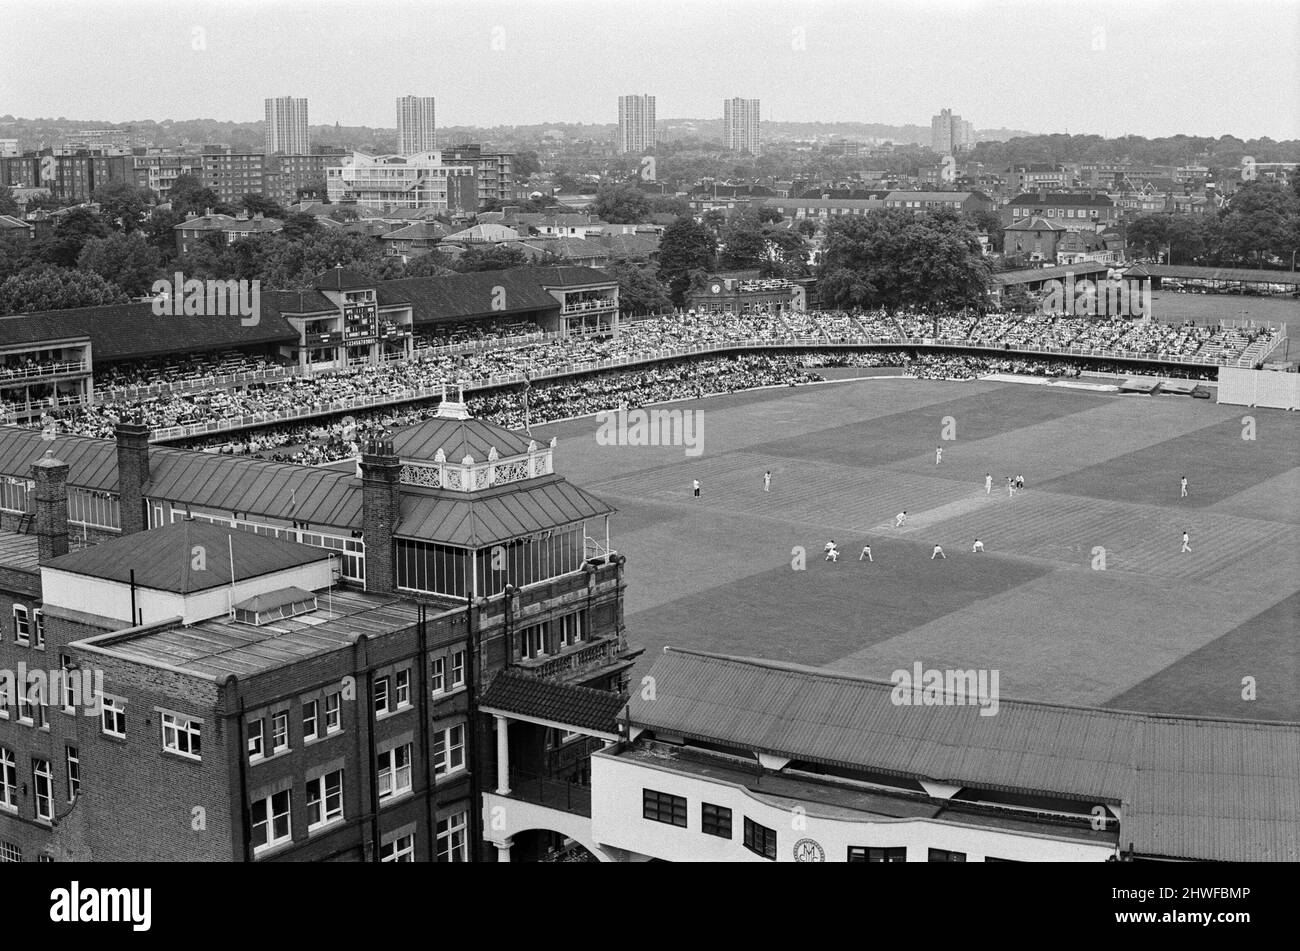 Terrain de cricket de Lord's, match d'essai, Angleterre contre Antilles. Une vue en hauteur du terrain de cricket de Lord montrant la vaste foule et le cricket en cours. 28th juin 1969. Banque D'Images